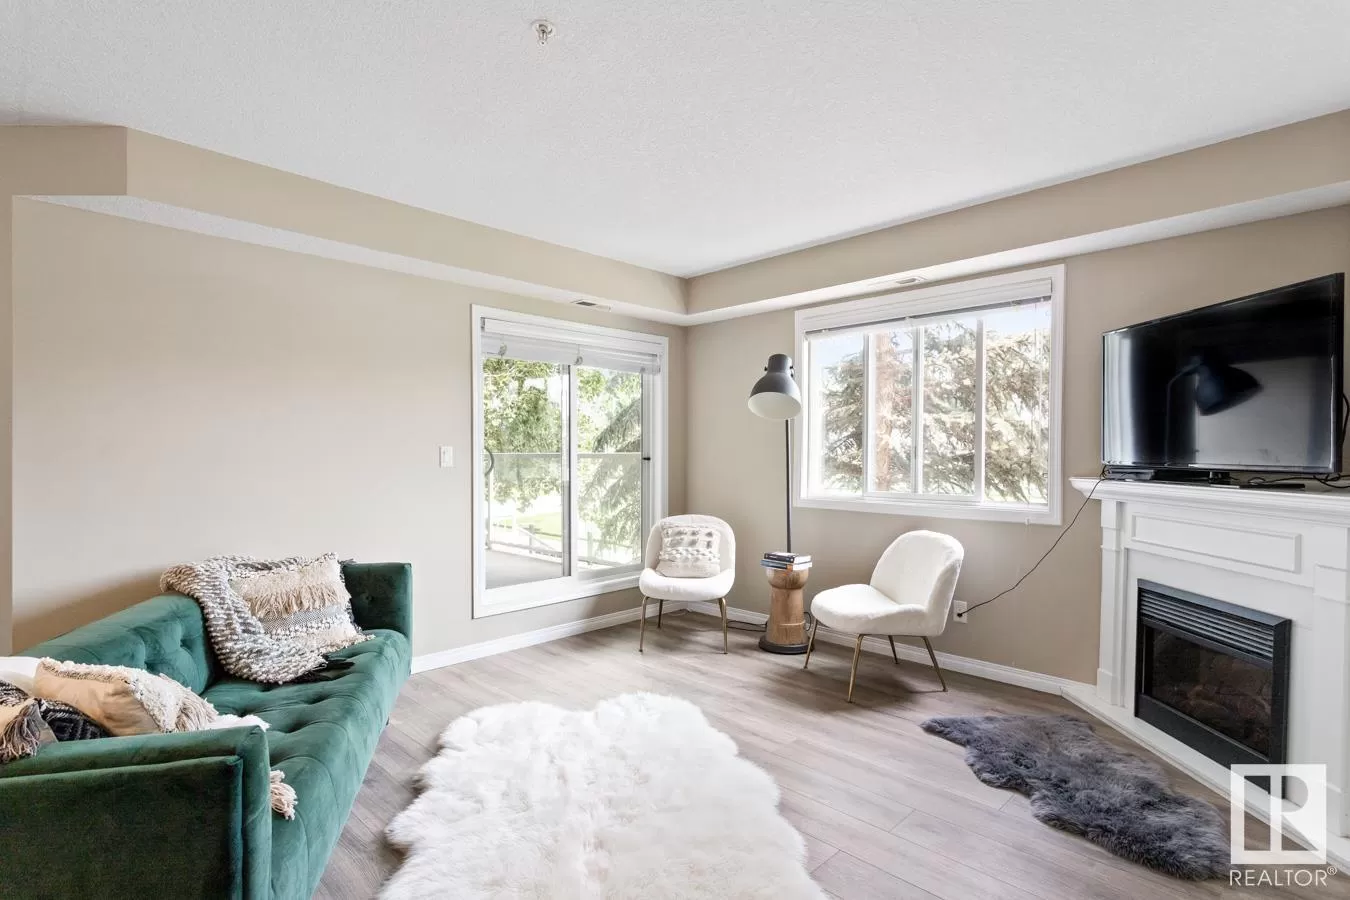 Apartment for rent: #108 260 Lewis Estates Bv Nw, Edmonton, Alberta T5T 3Y4